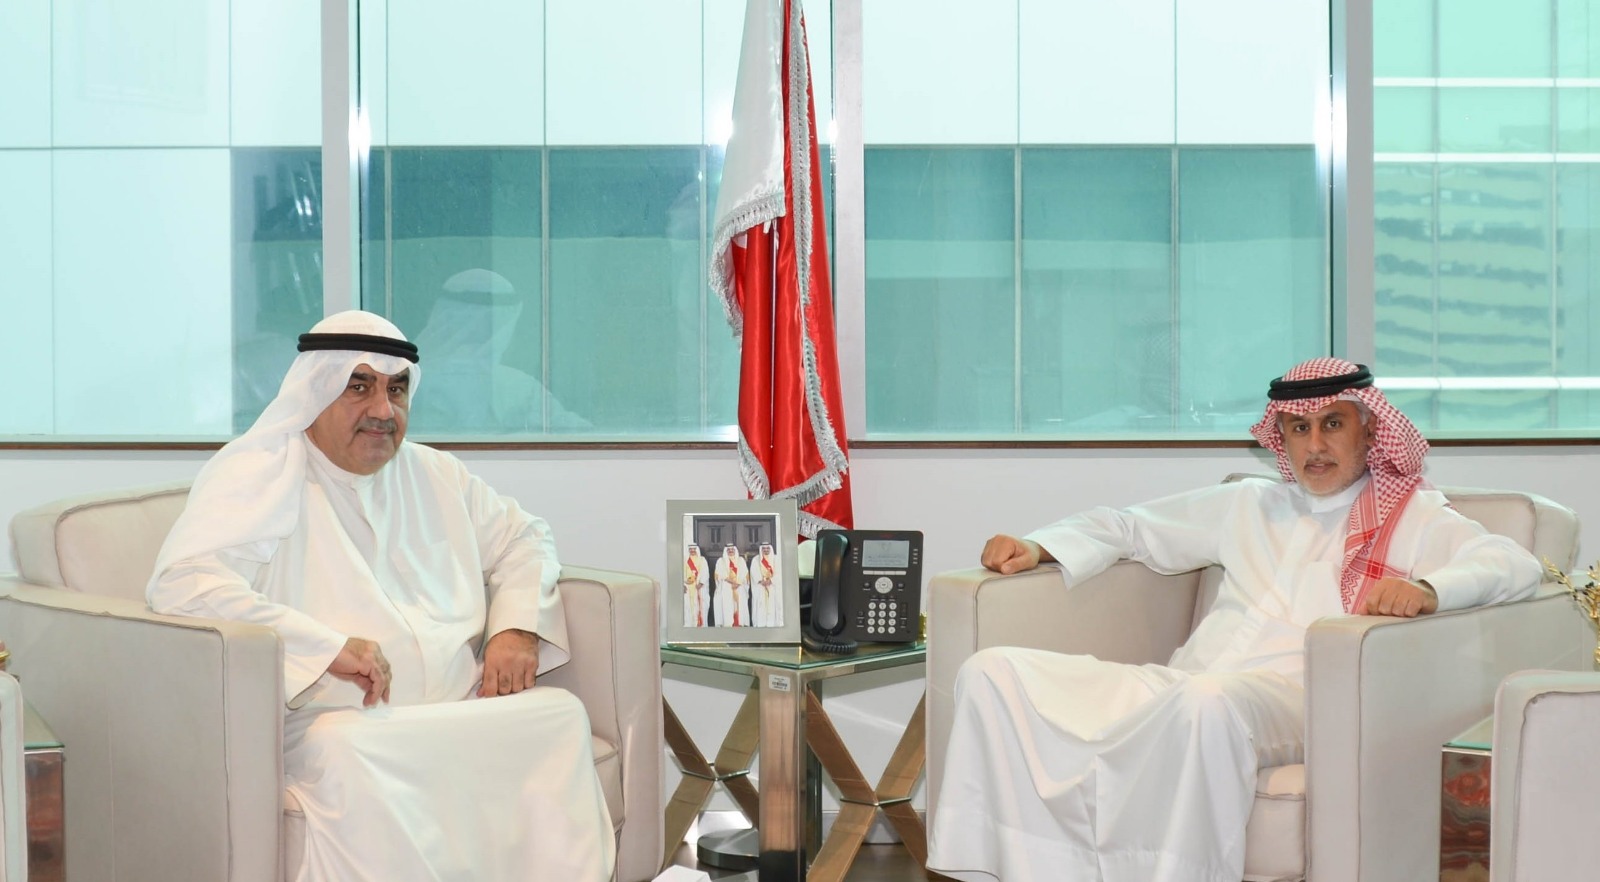 وزير الصناعة والتجارة والسياحة البحريني التقى رئيس اللجنة المنظمة لمعرض الكويت للطيران 2020